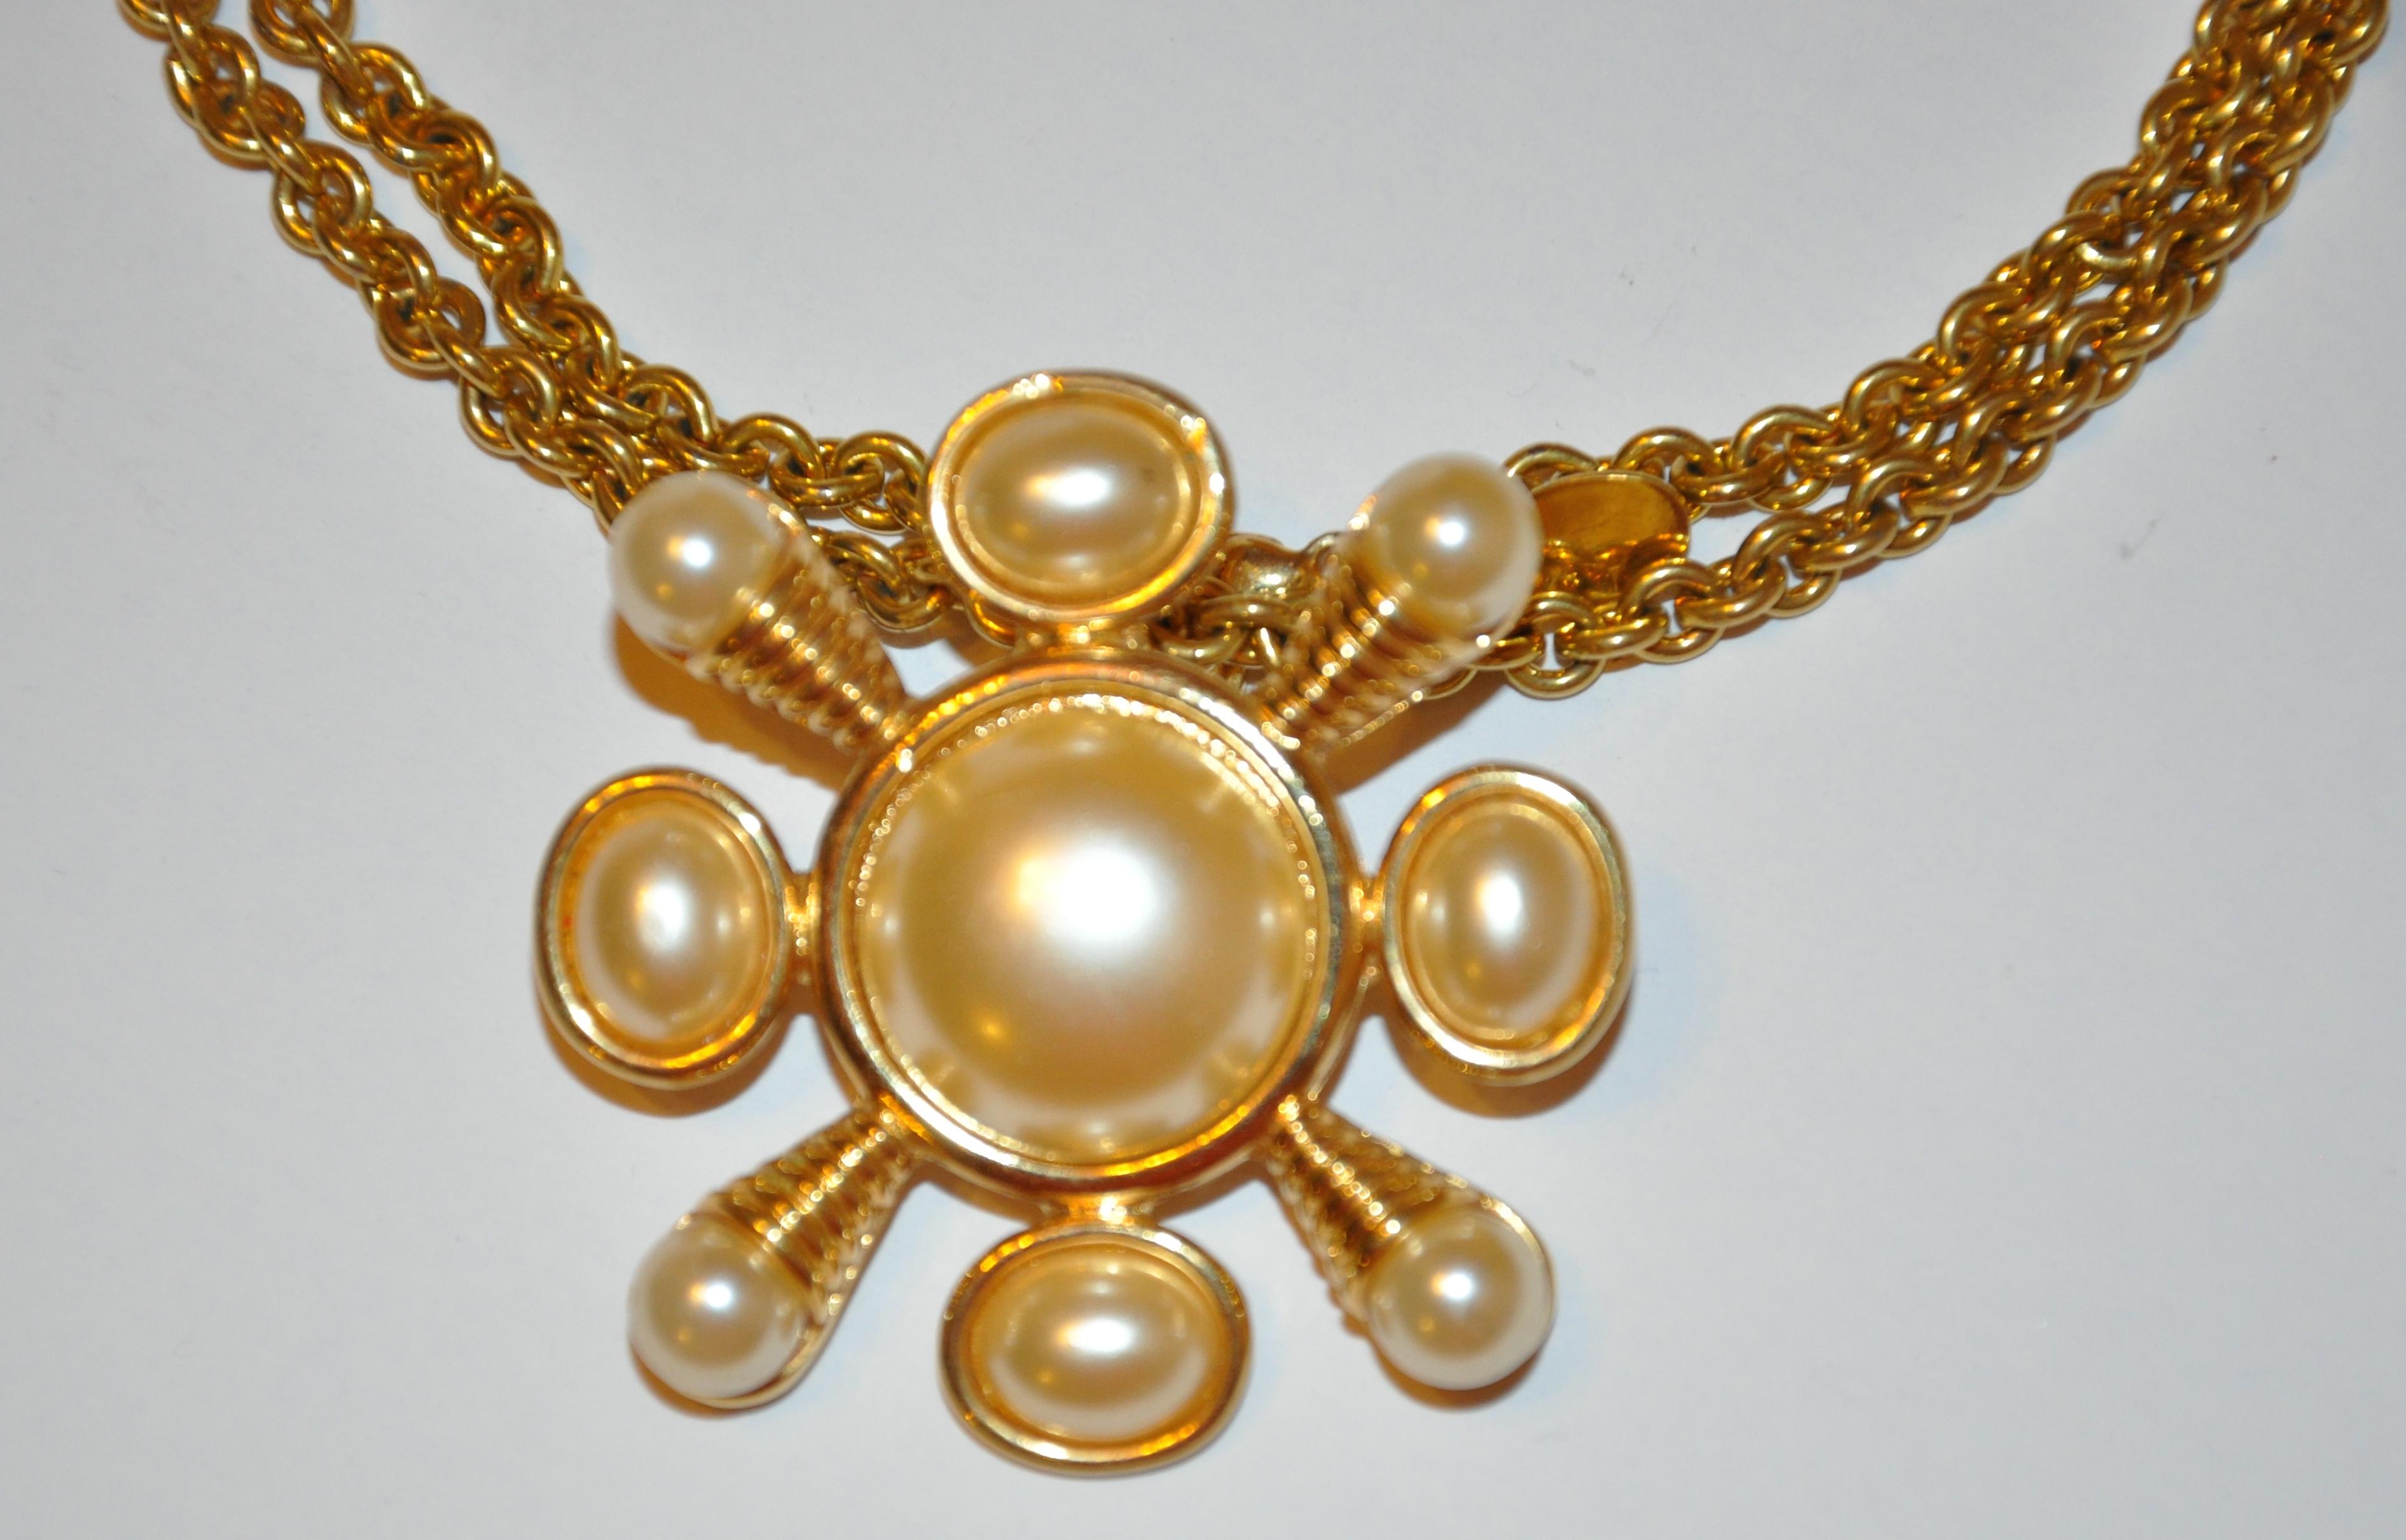        Le bracelet Kenneth Jay Lane en vermeil doré et gravé, rehaussé de perles de différentes tailles, peut être porté comme un pendentif ou comme une broche, selon votre choix. La broche elle-même mesure 1 6/8 pouces par 1 6/8 pouces.  Le collier